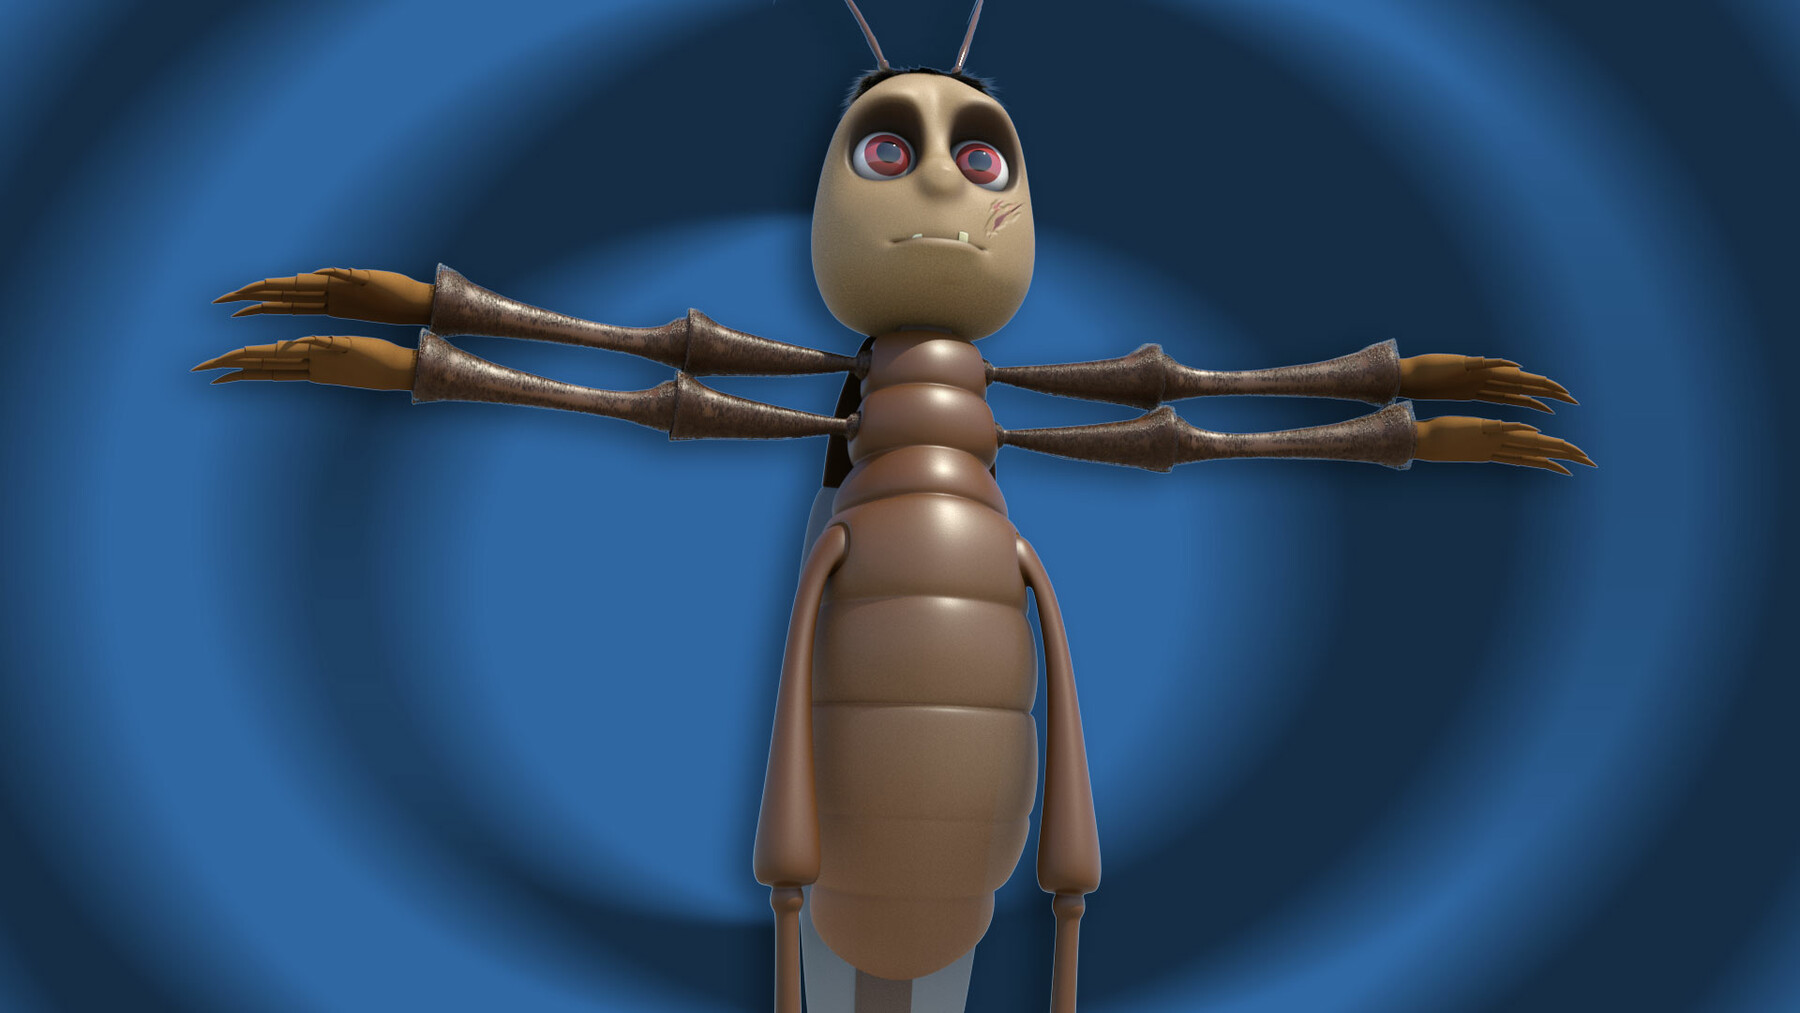 ArtStation - Cartoon cockroach 3D model | Resources